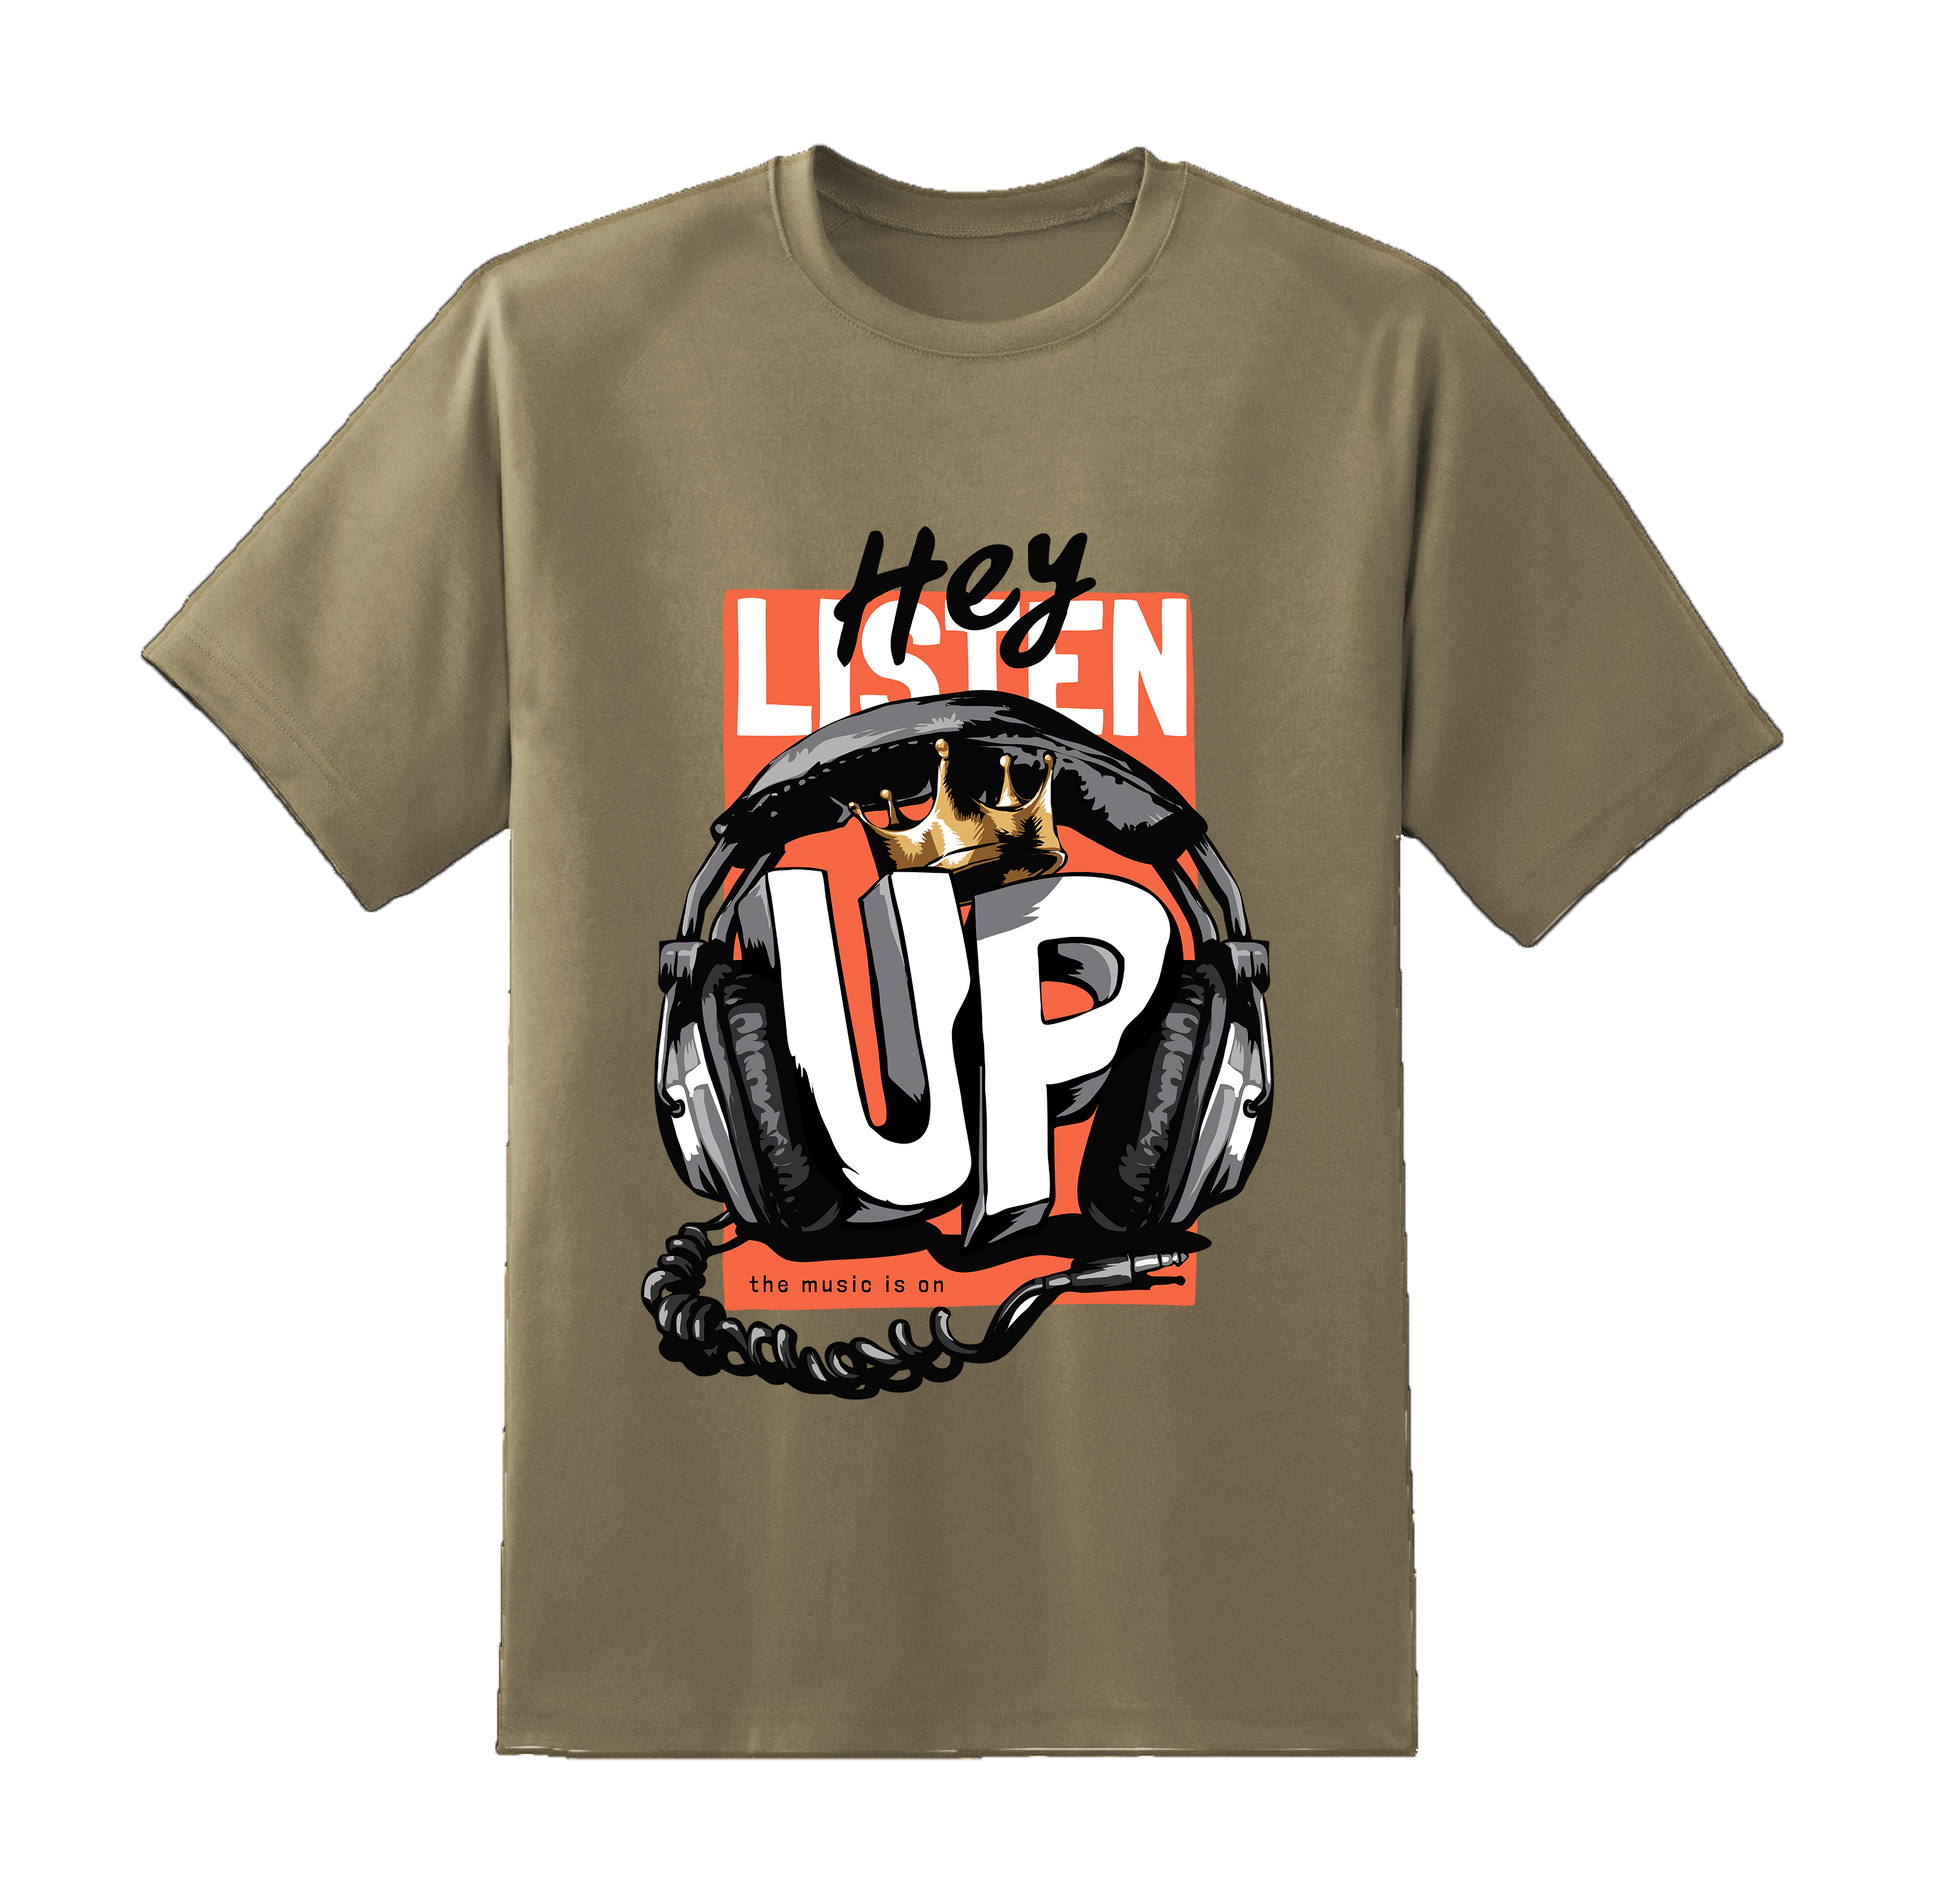 "Hey Listen Up" T-Shirt